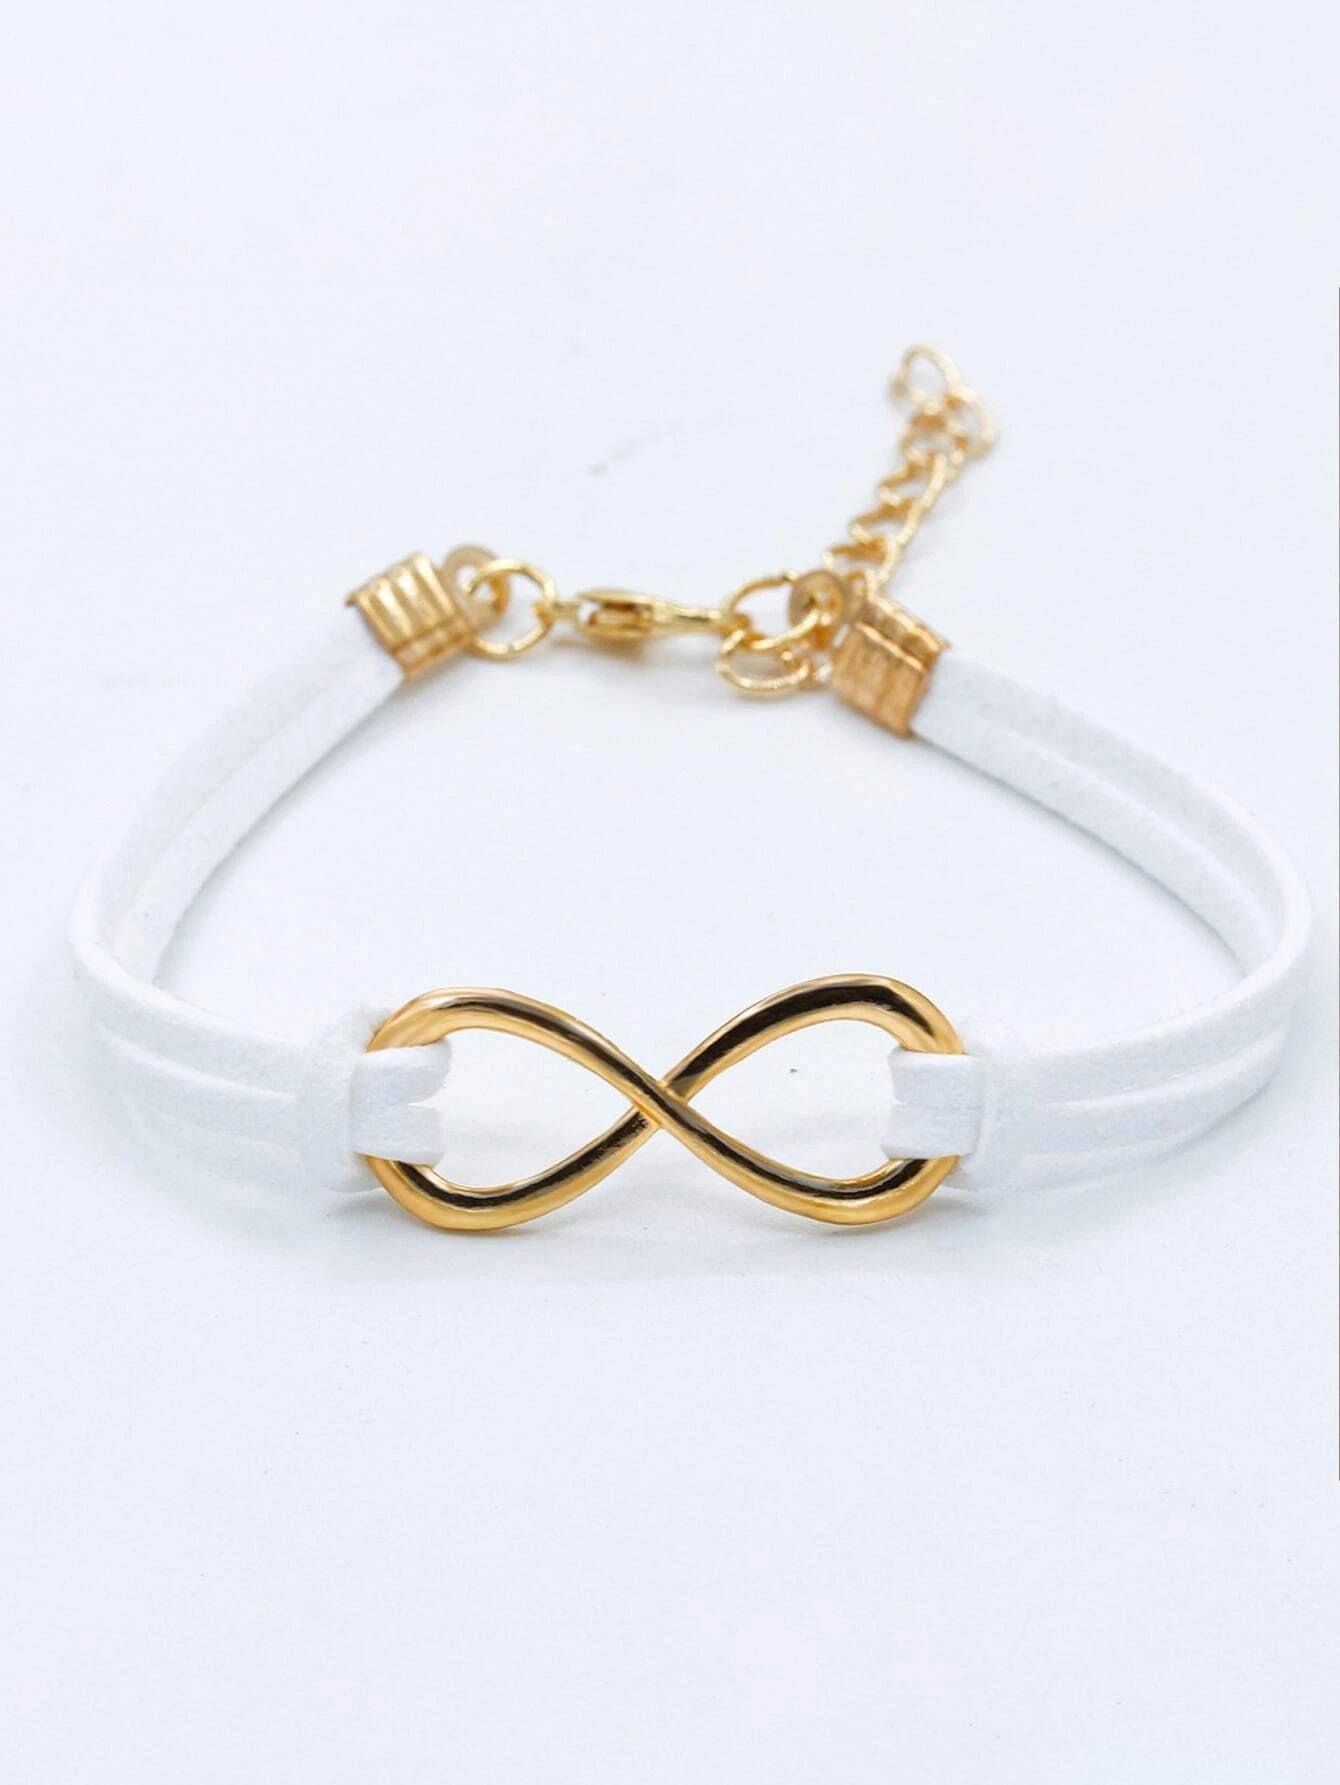 Infinity style bracelet